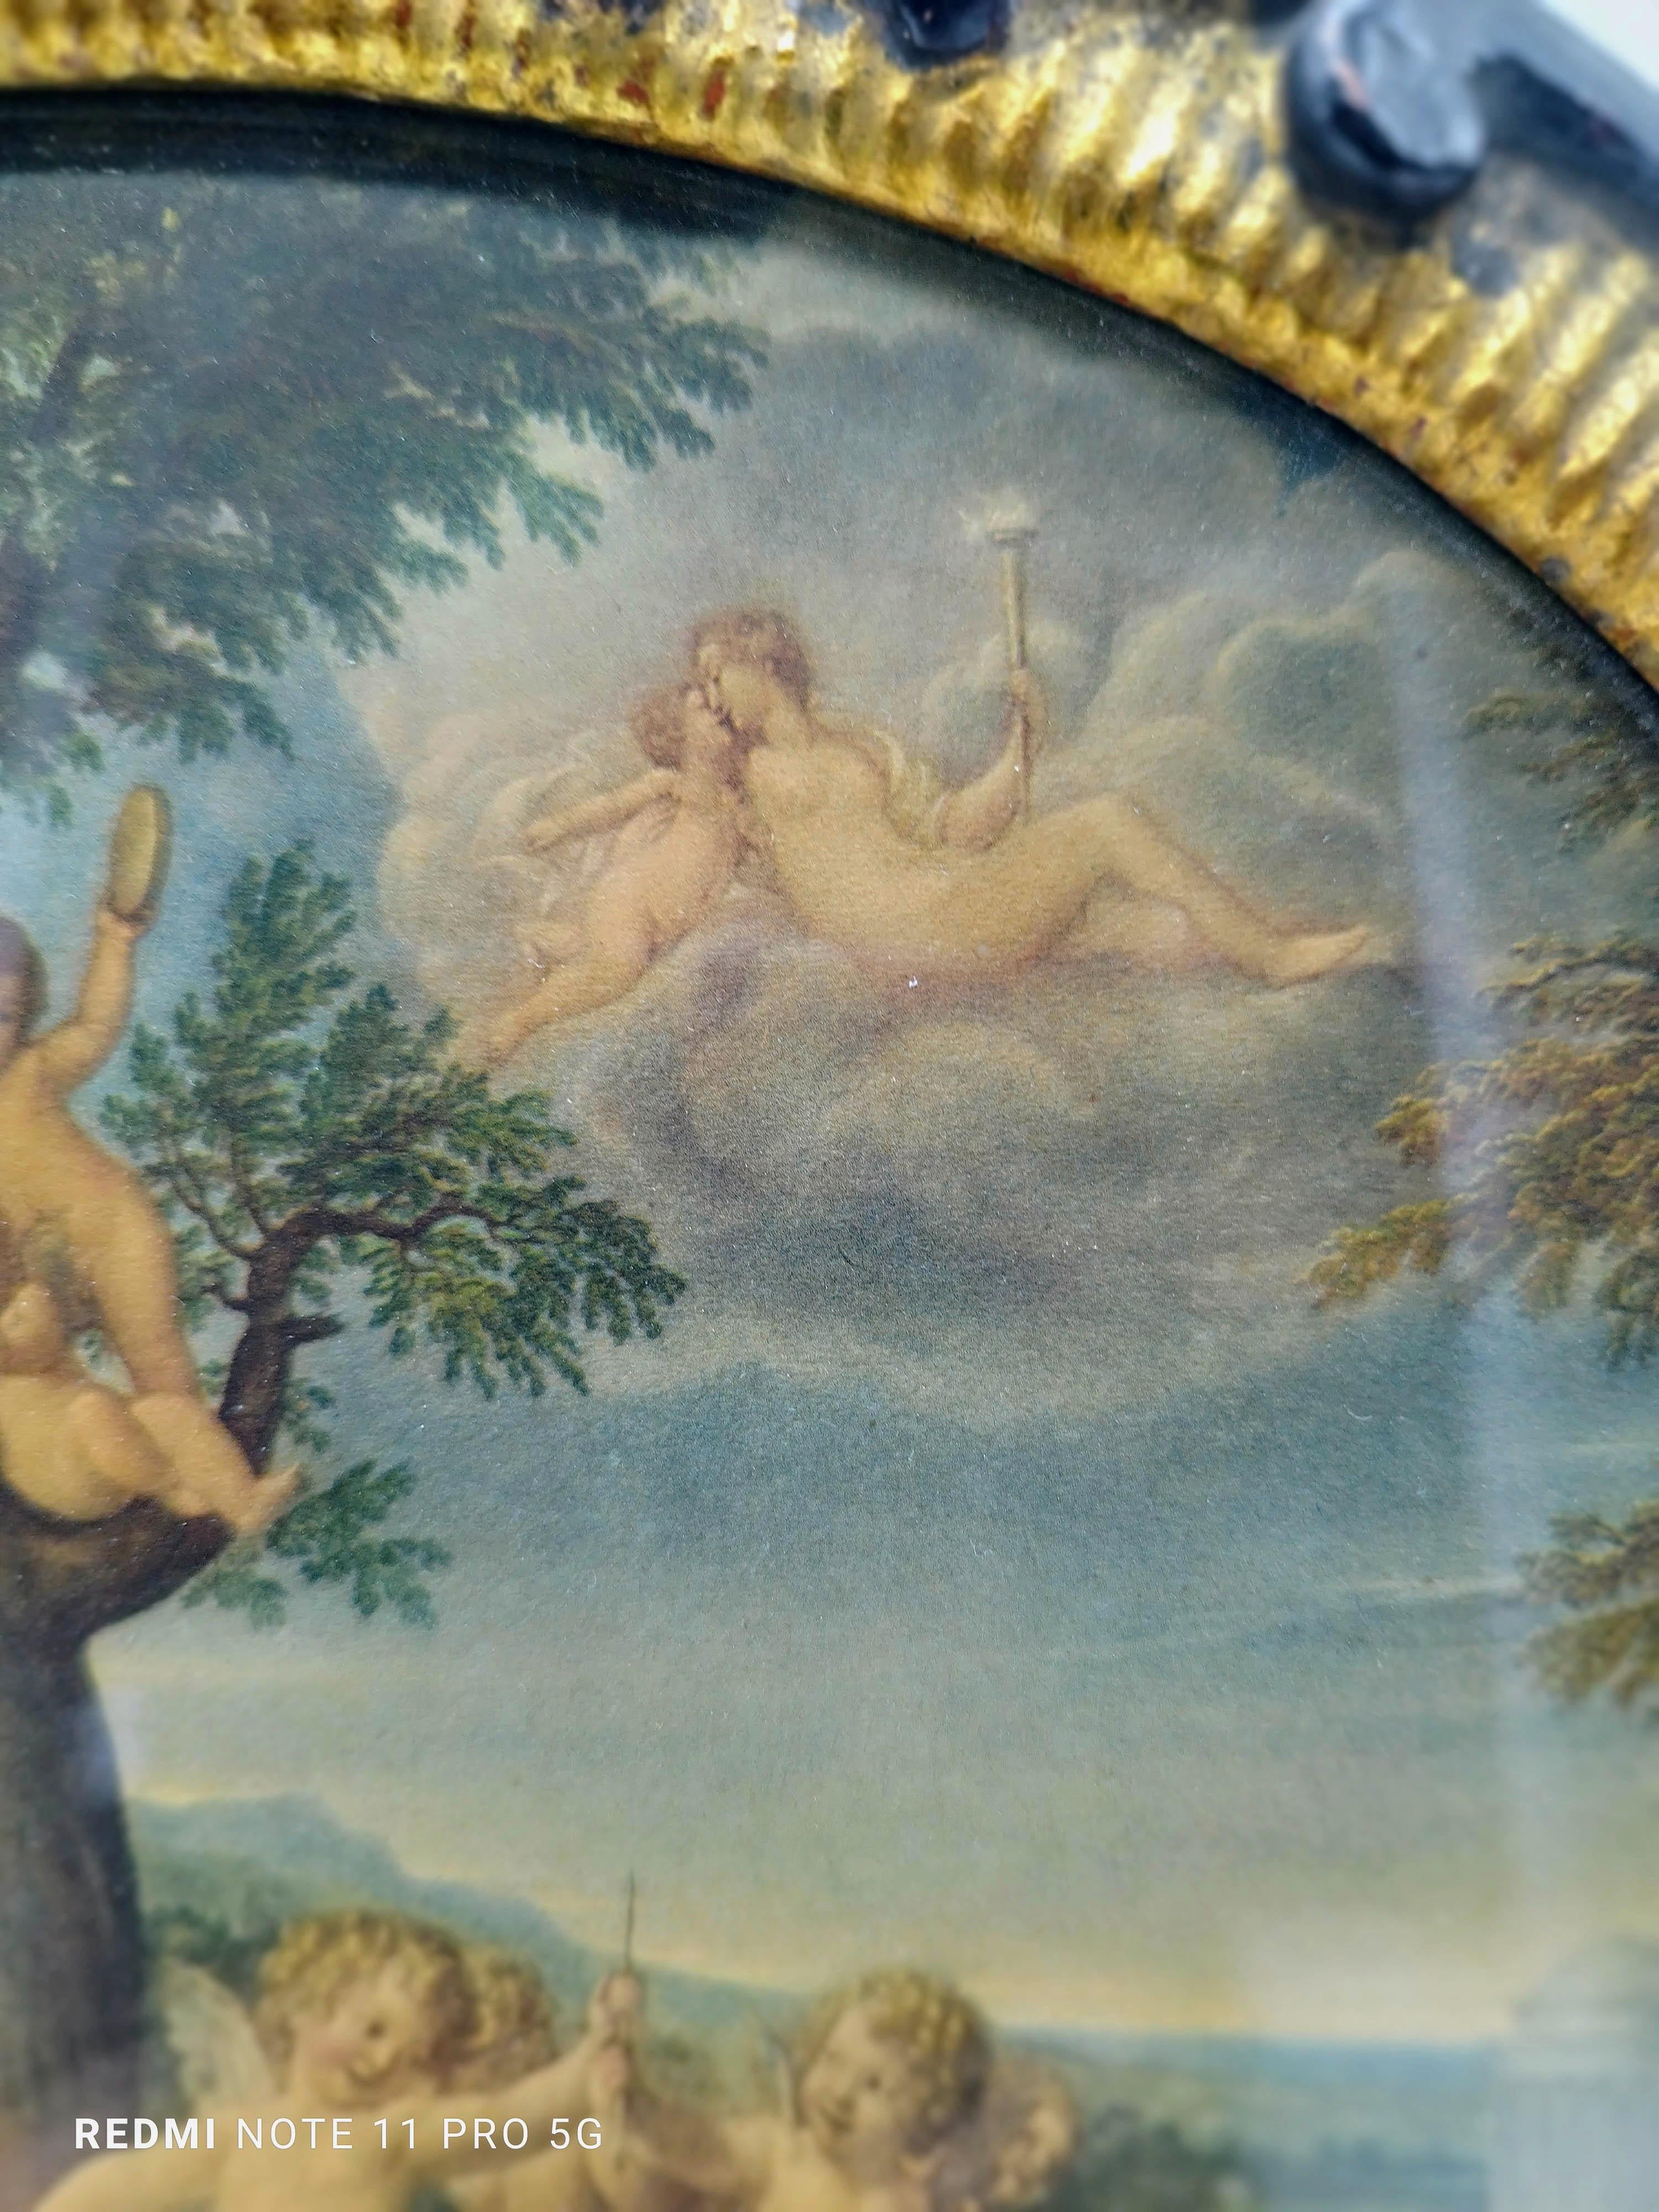 Antiker Farbdruck, der den Tanz der Amoretten darstellt, mit geschnitztem Holzrahmen.
Das außerordentlich raffinierte und sehr dekorative Gemälde stellt eine Allegorie aus dem 18. Jahrhundert dar.
In der Mitte und im Vordergrund befindet sich eine